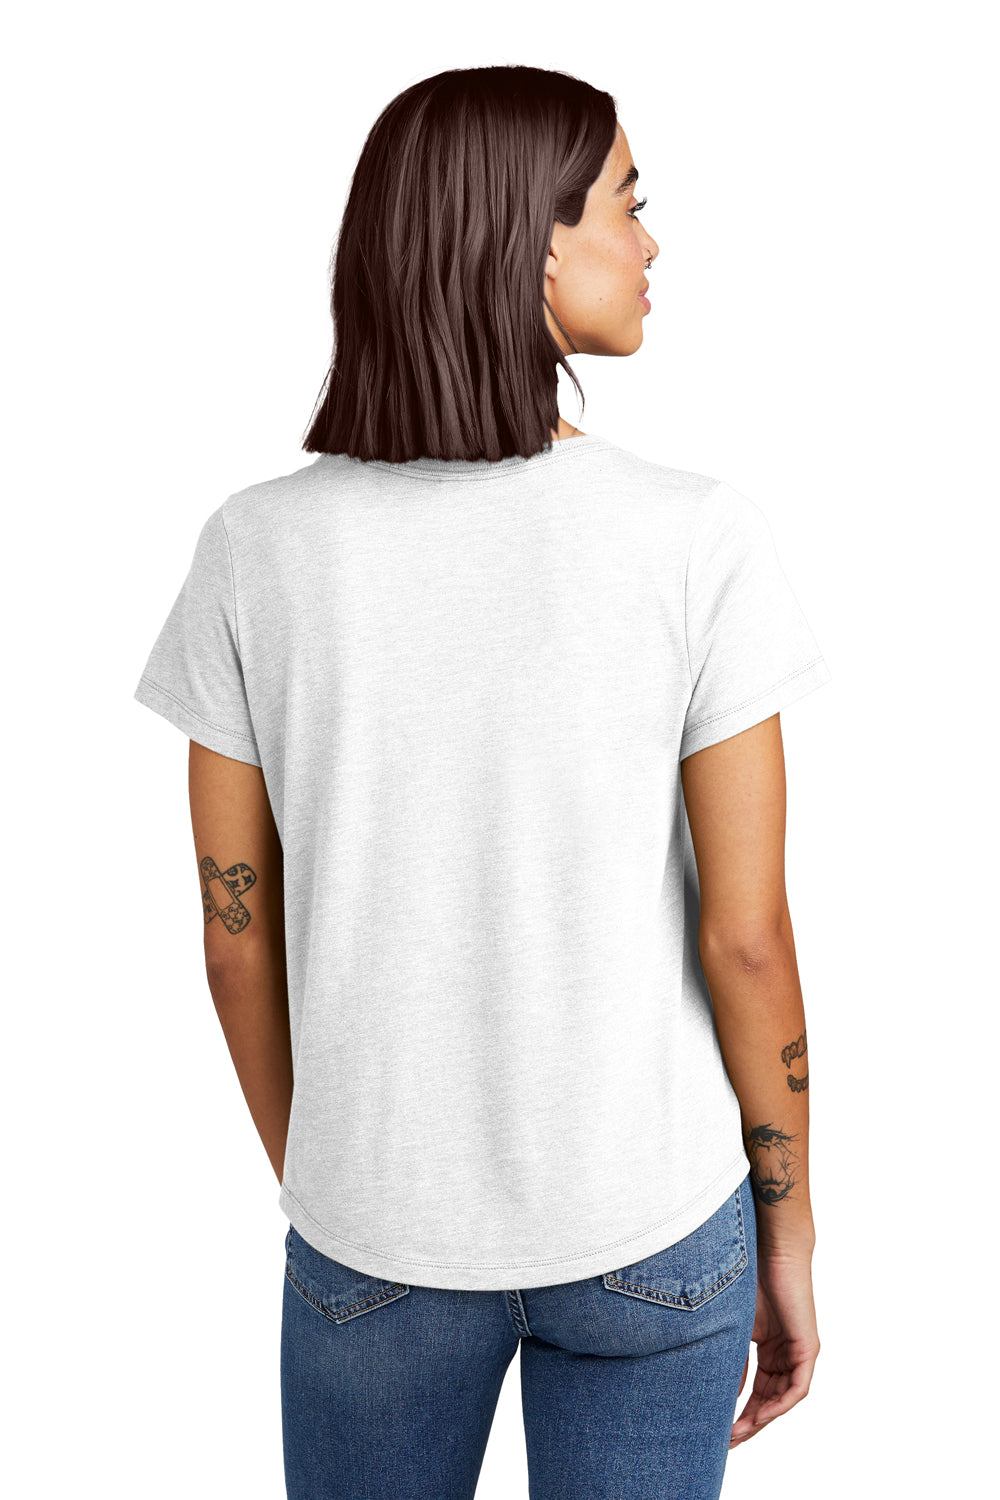 Allmade AL2015 Womens Short Sleeve Scoop Neck T Shirt Fairly White Model Back